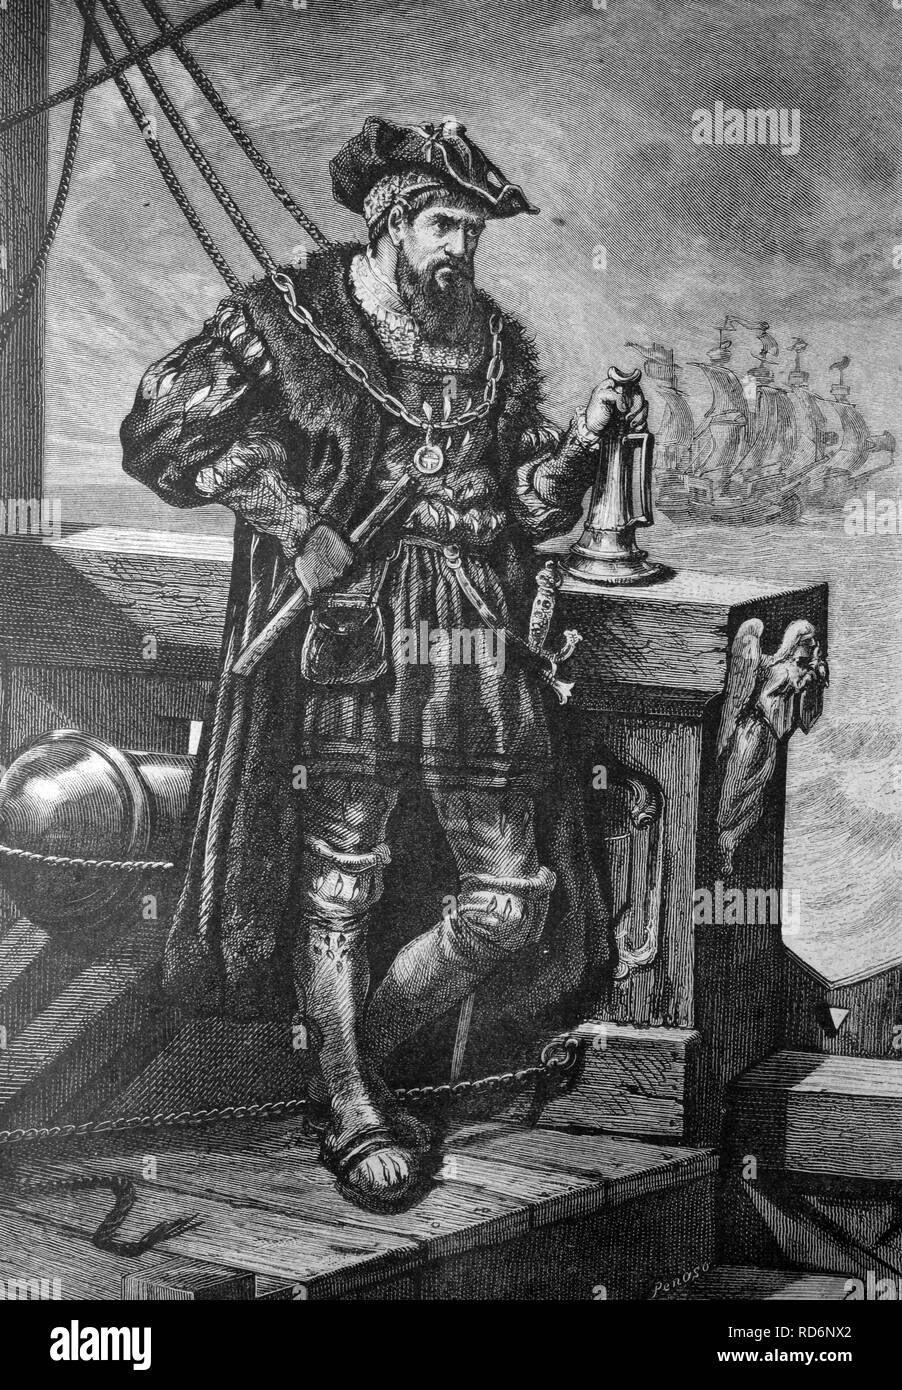 Vasco da Gama, 1469-1524, navigateur portugais, illustration historique, vers 1886 Banque D'Images